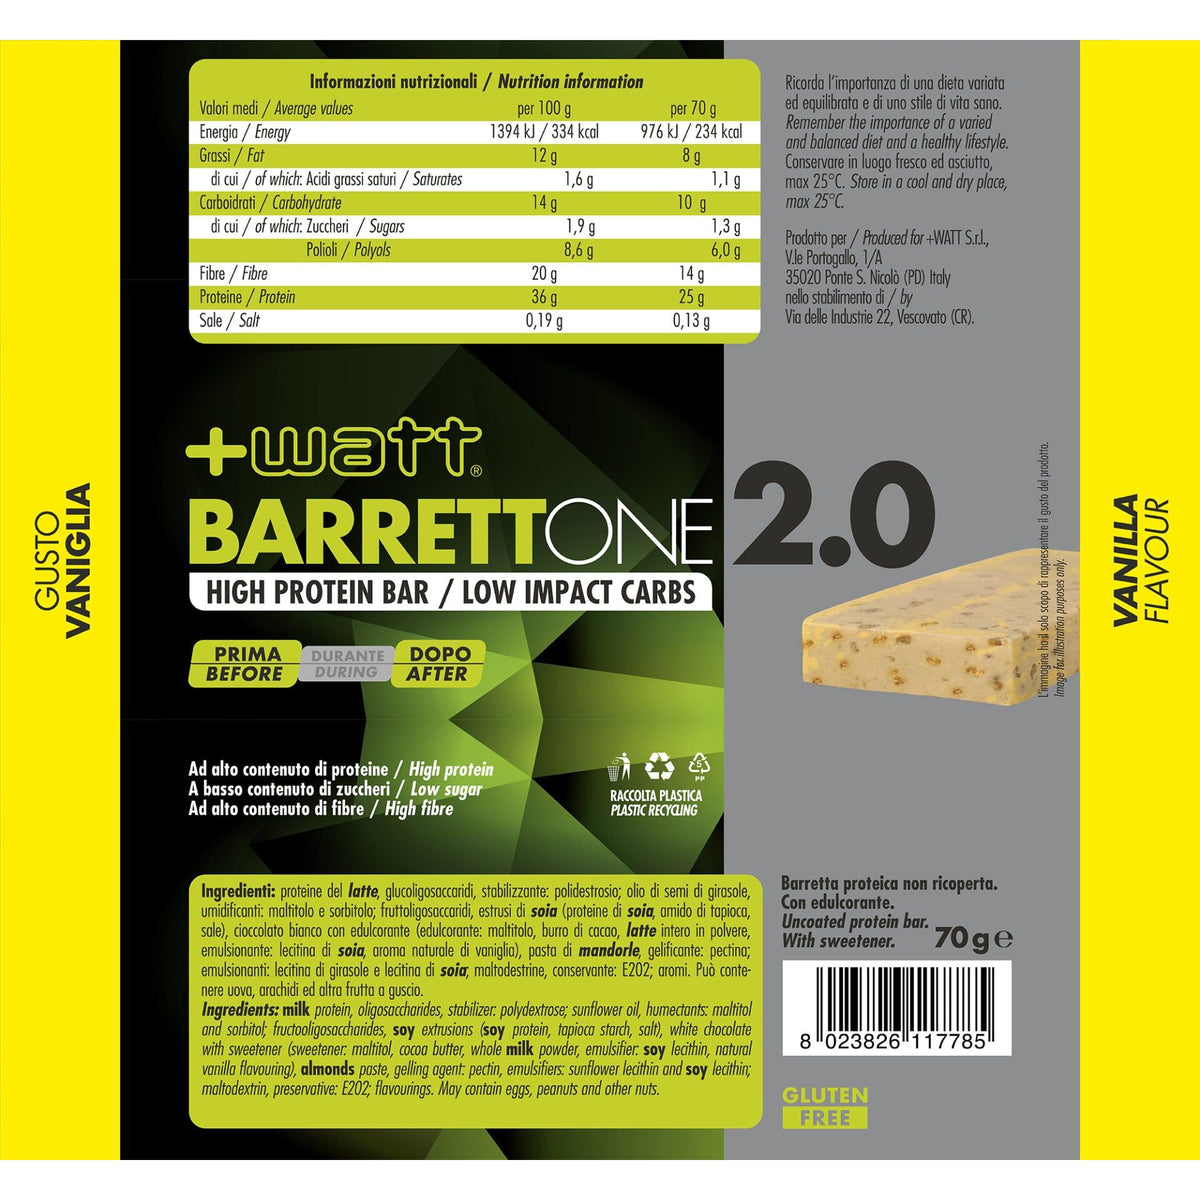 Barrettone 2.0 - barretta 70g - +WATT